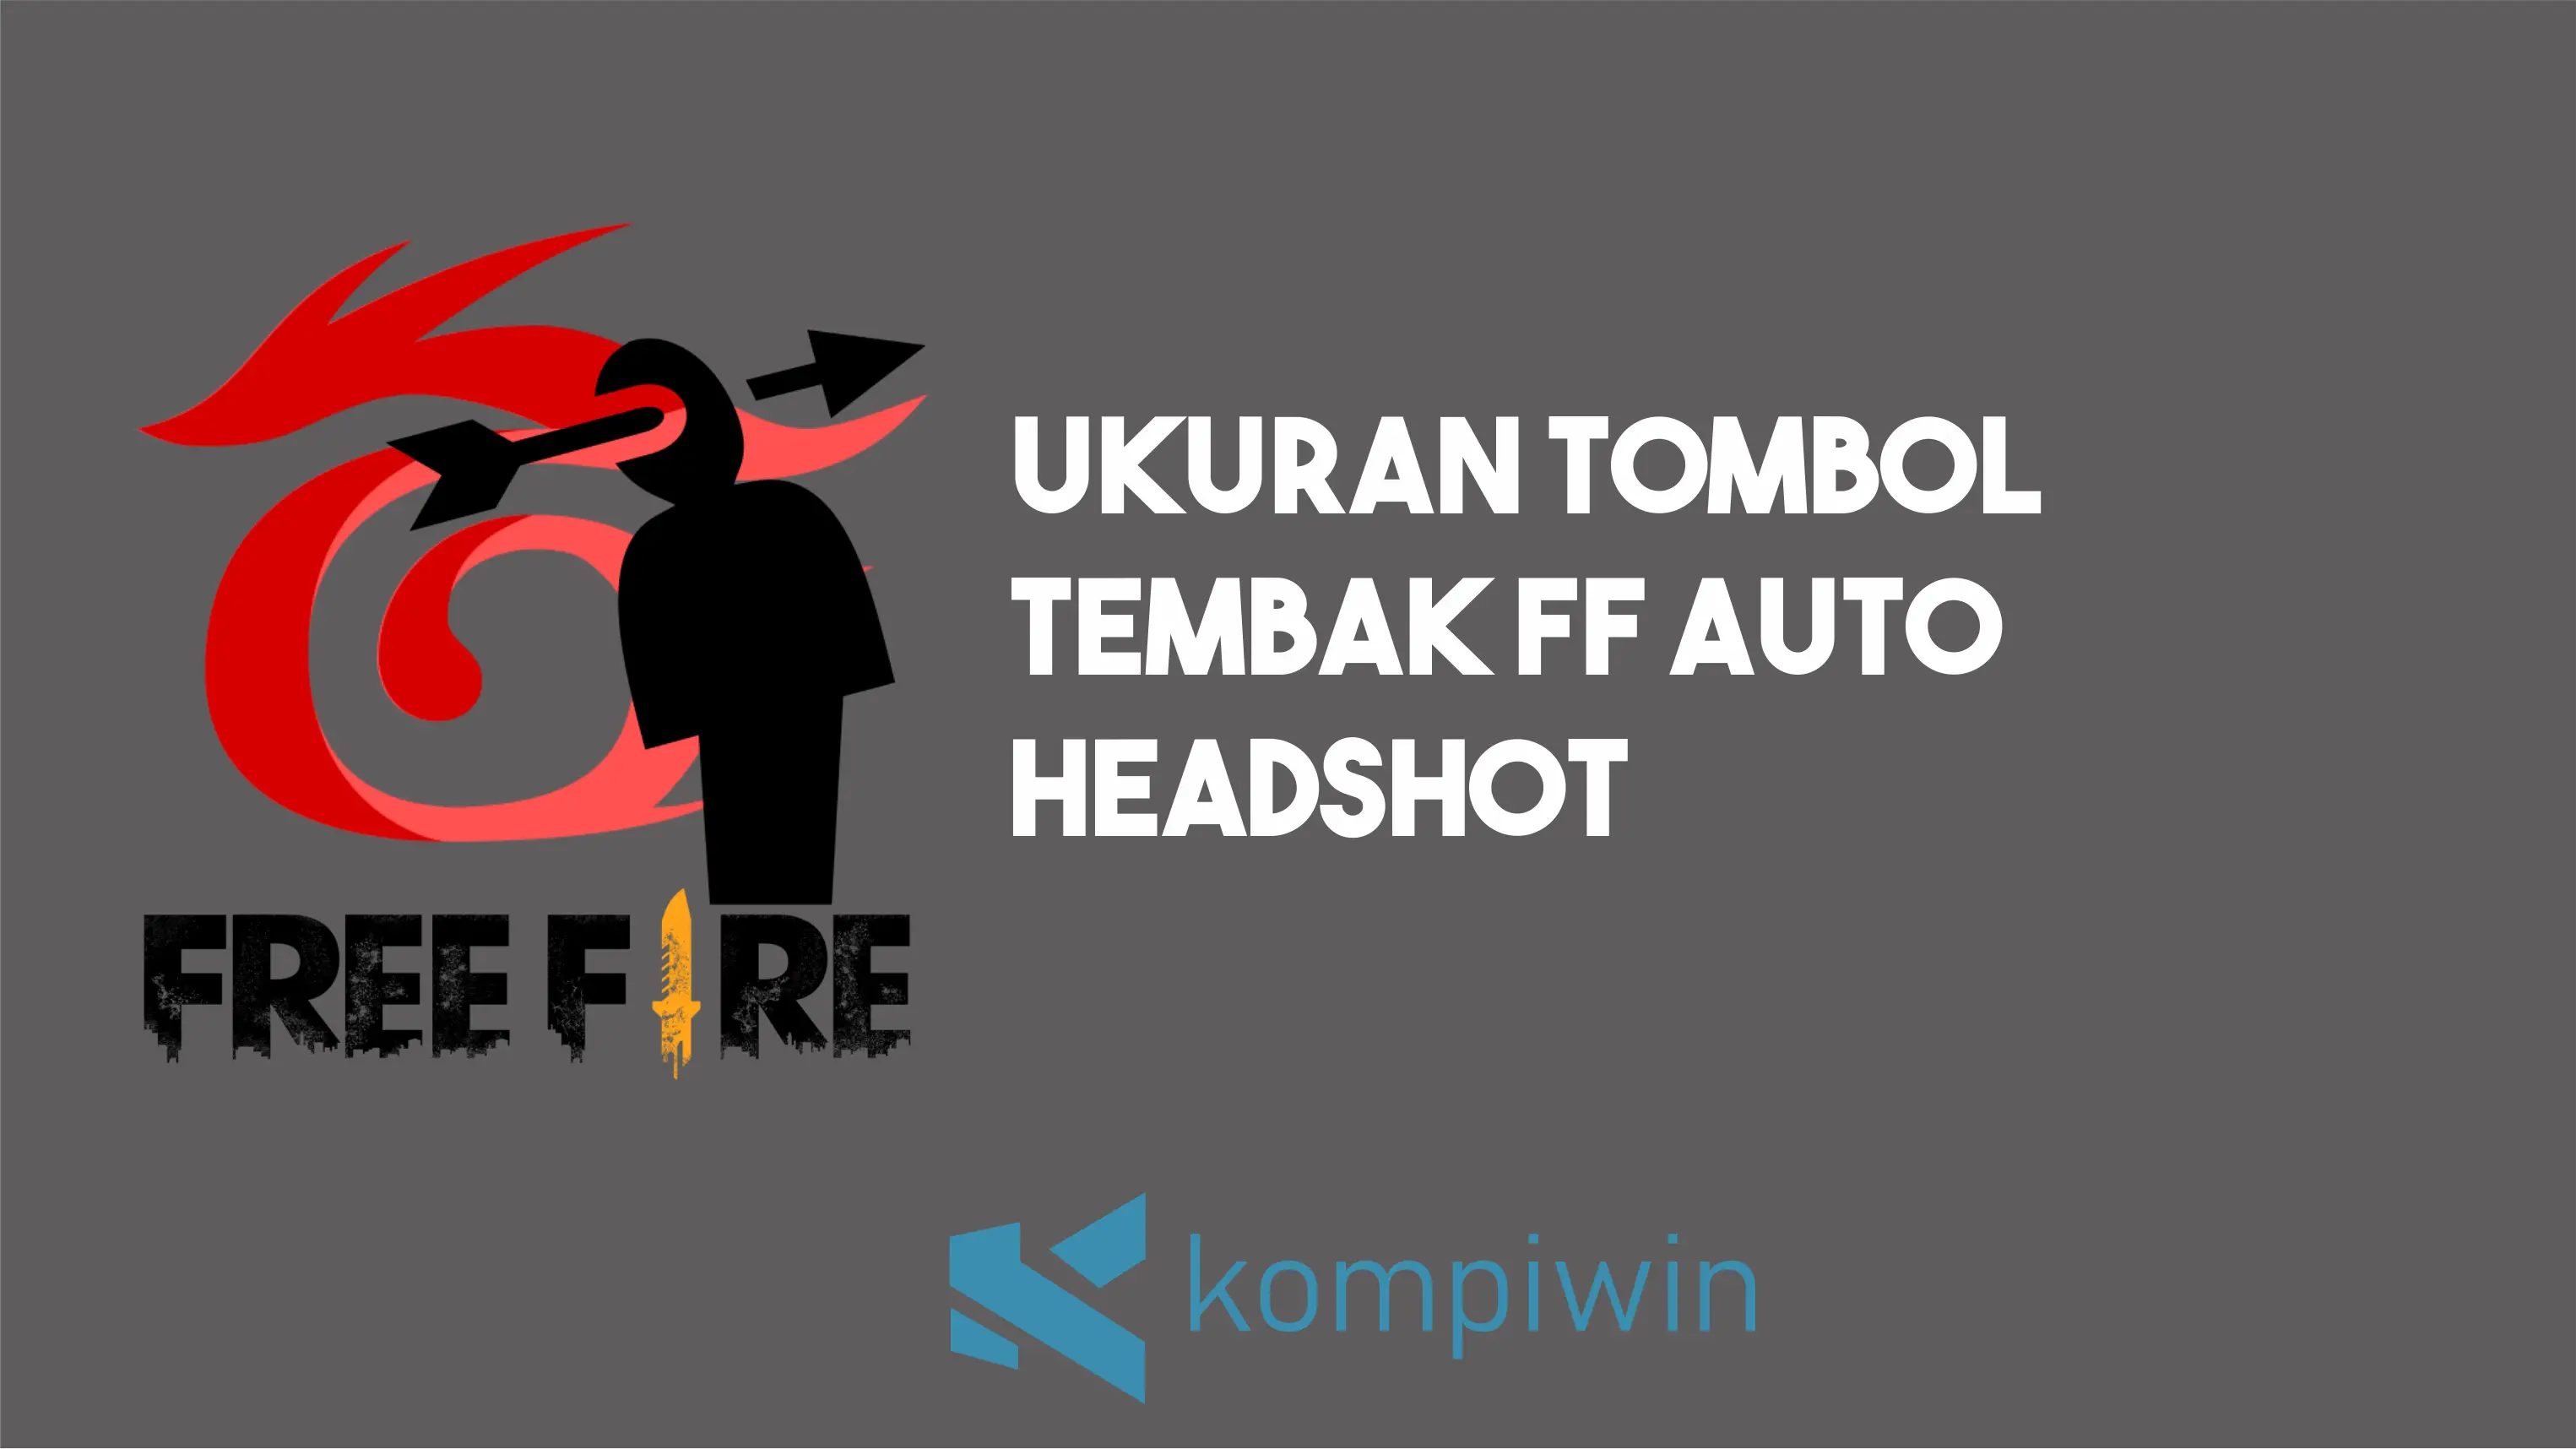 Ukuran Tombol Tembak FF Auto Headshot